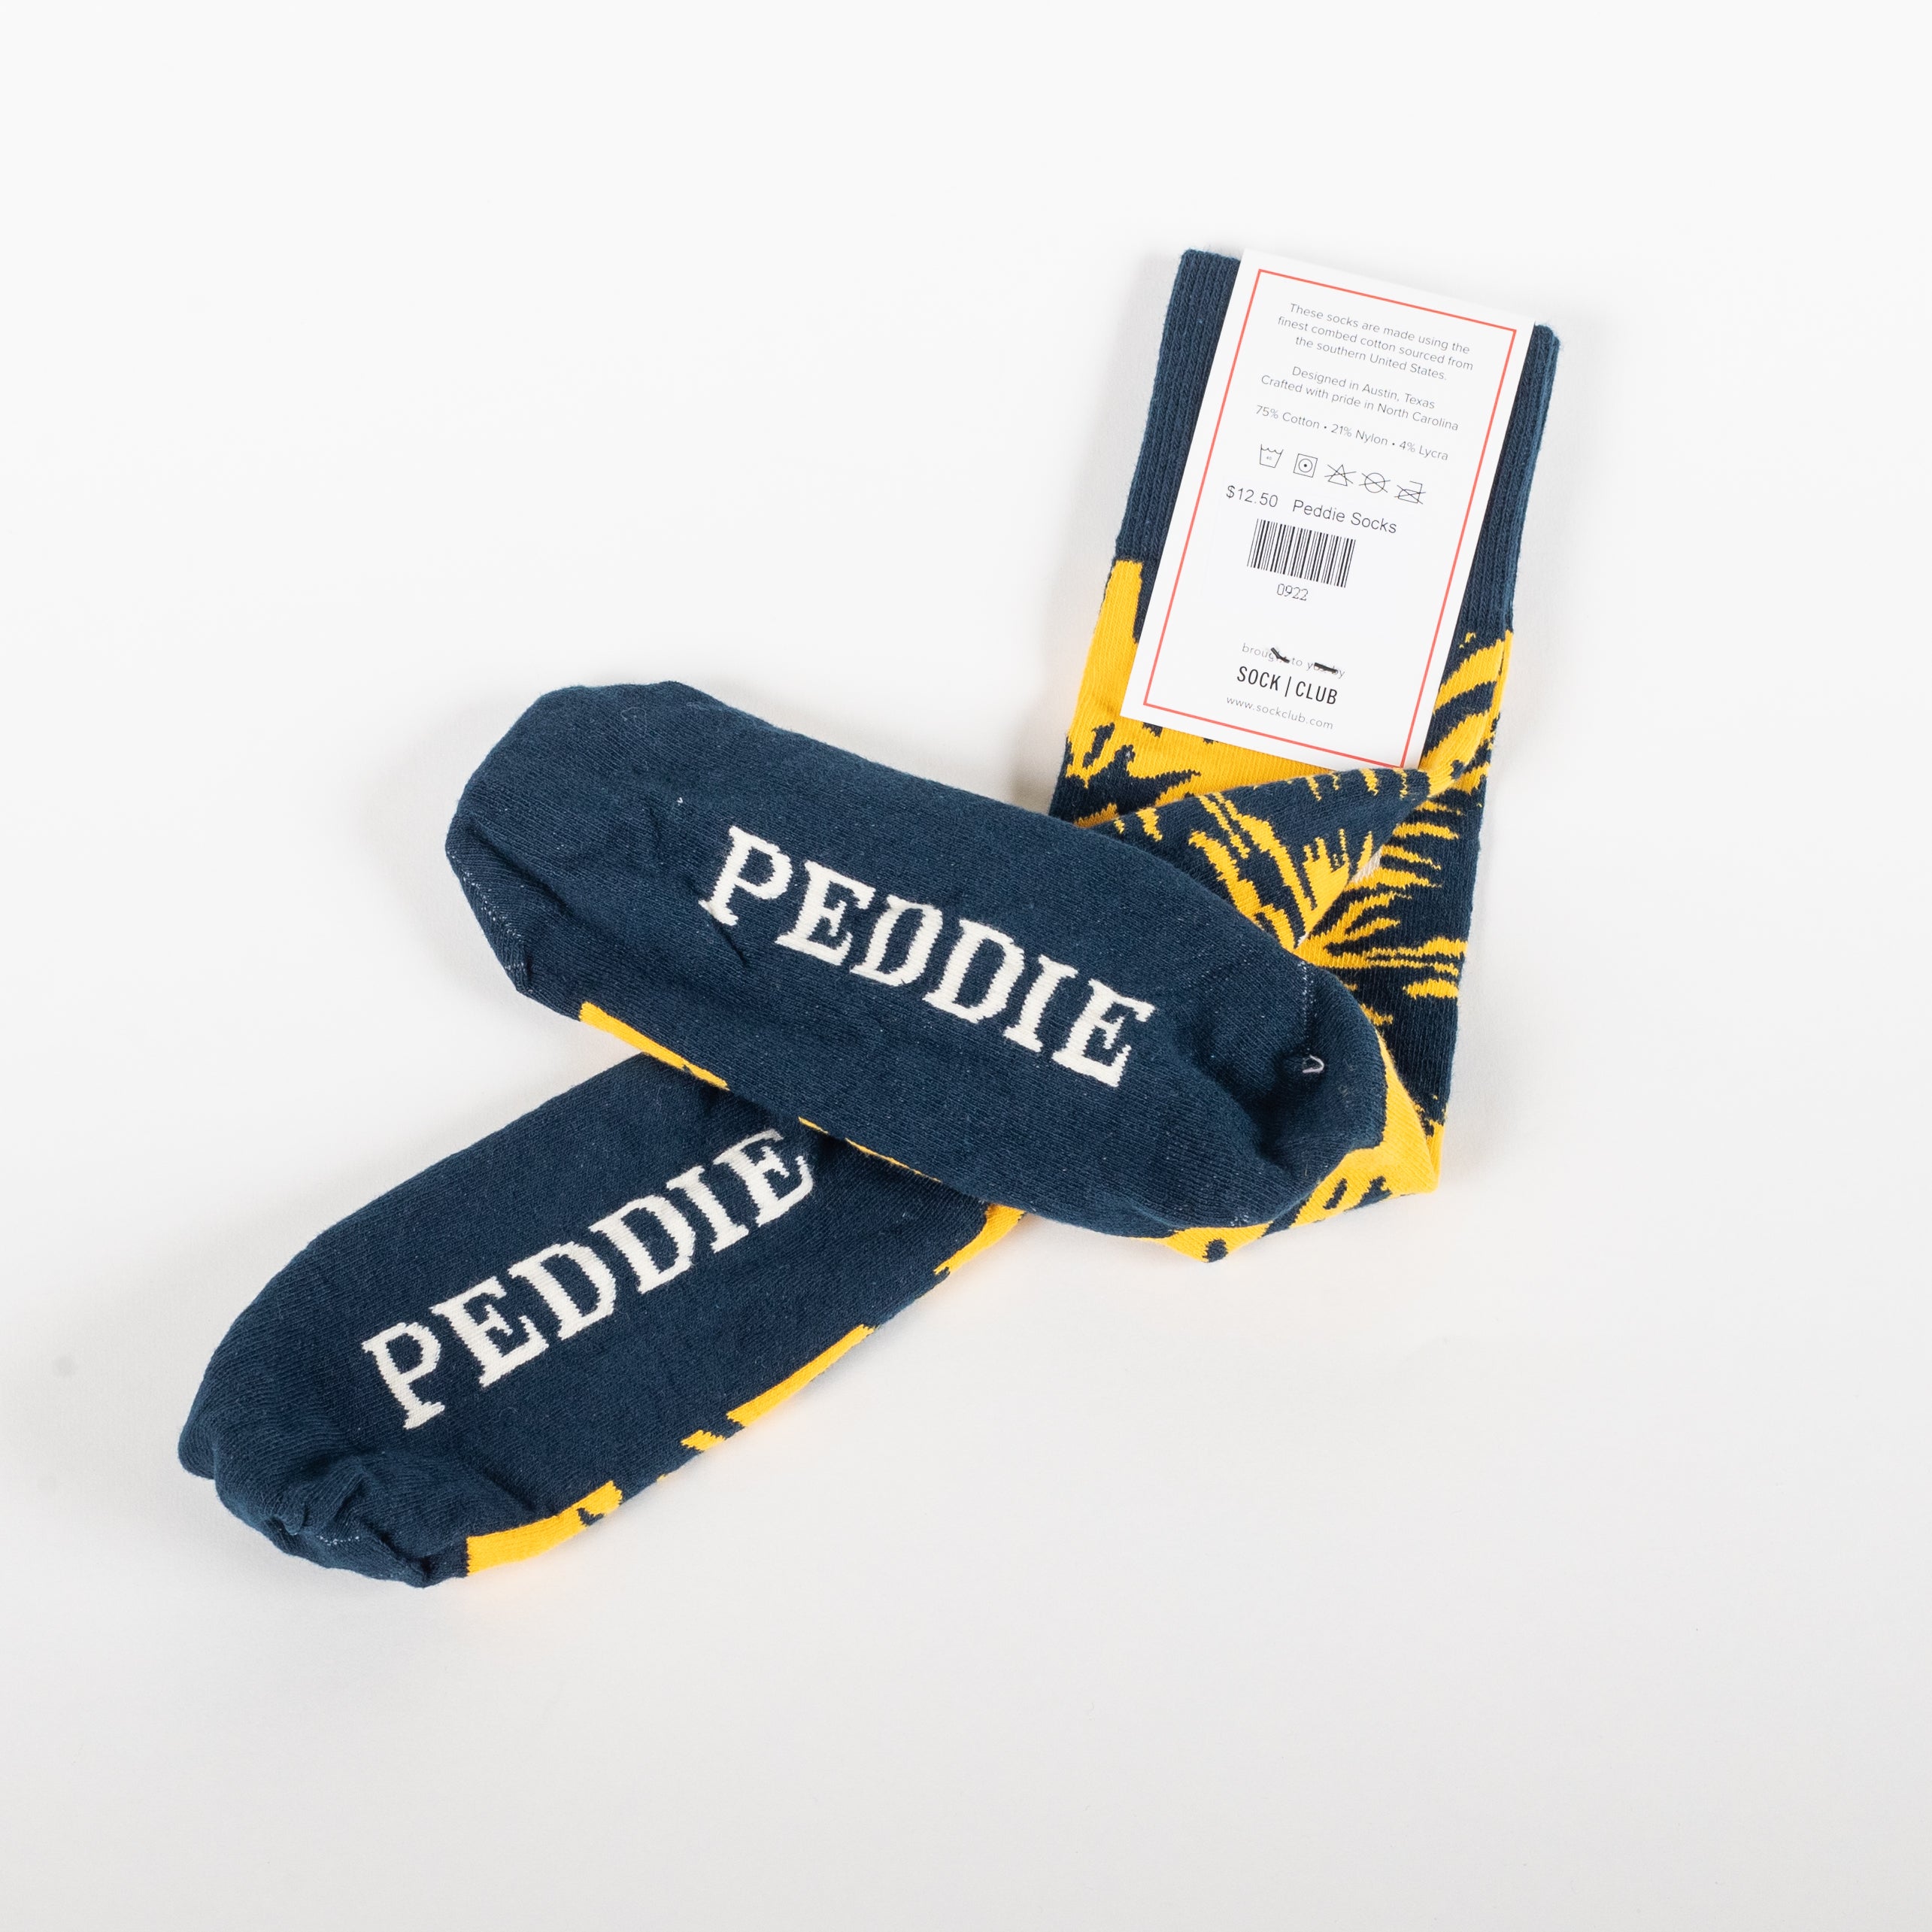 Peddie Socks